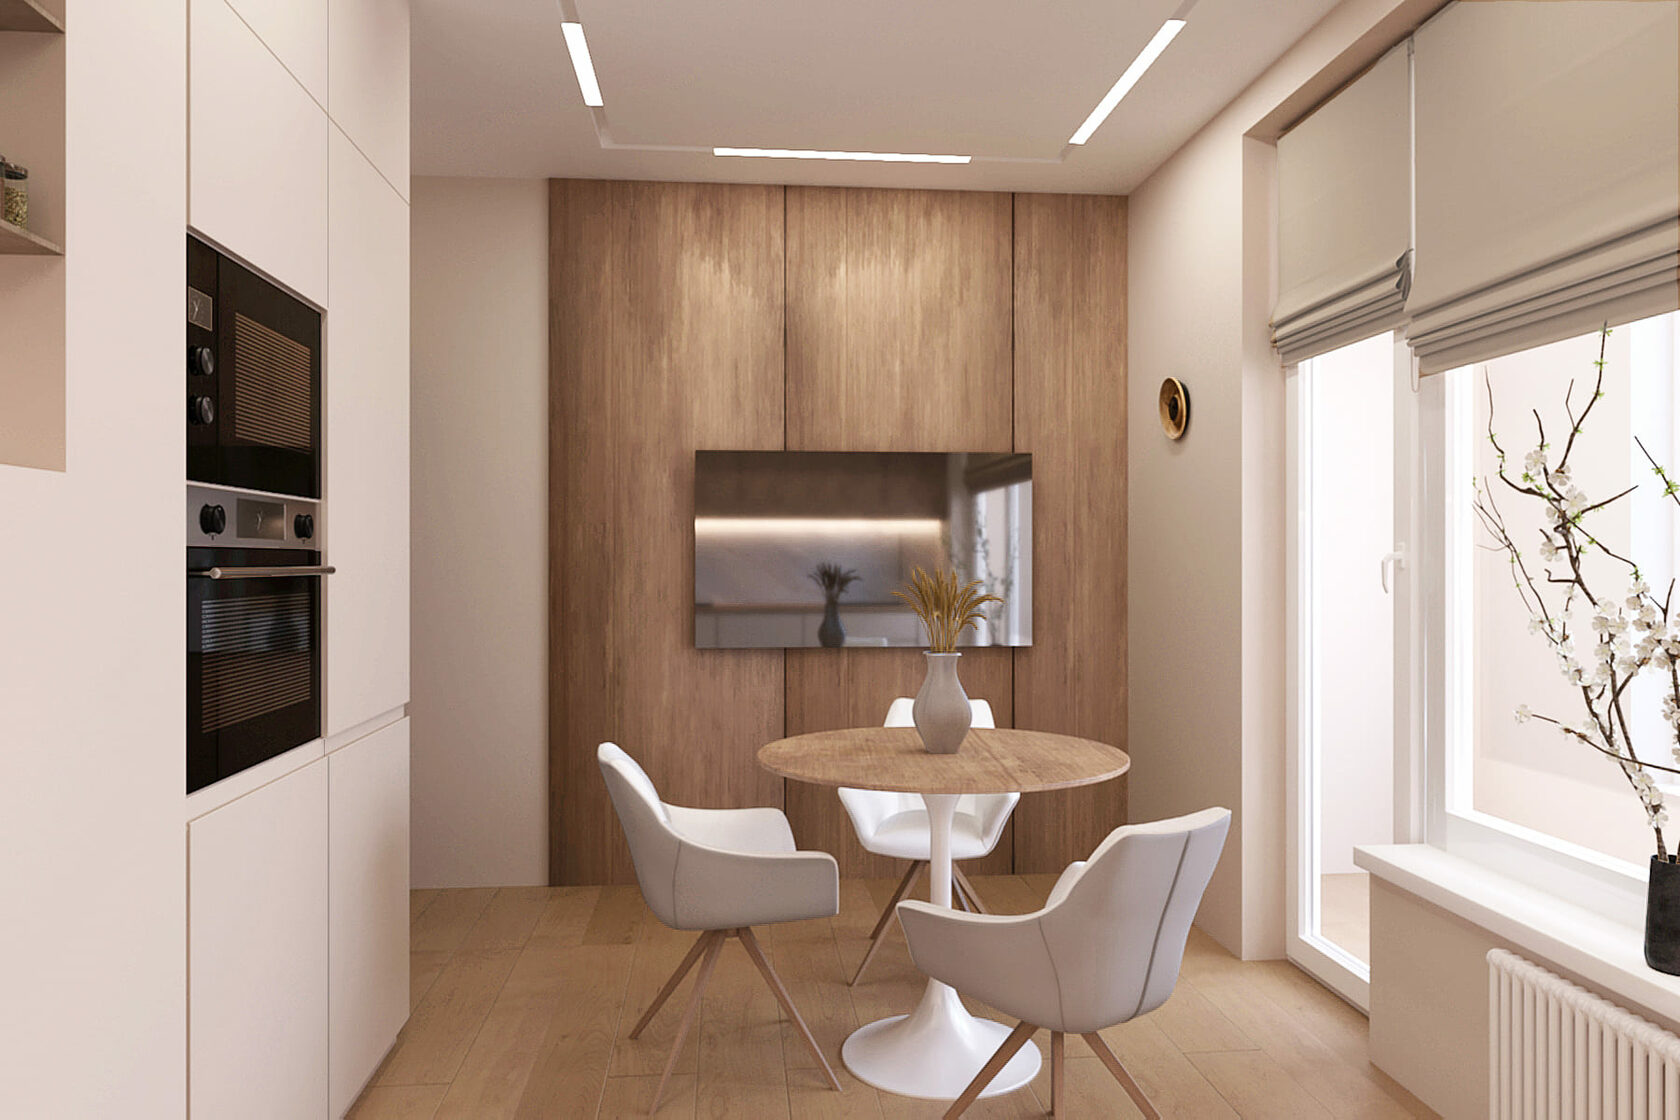 деревянные стеновые панели не стене кухни, круглый обеденный стол со светлыми стульями